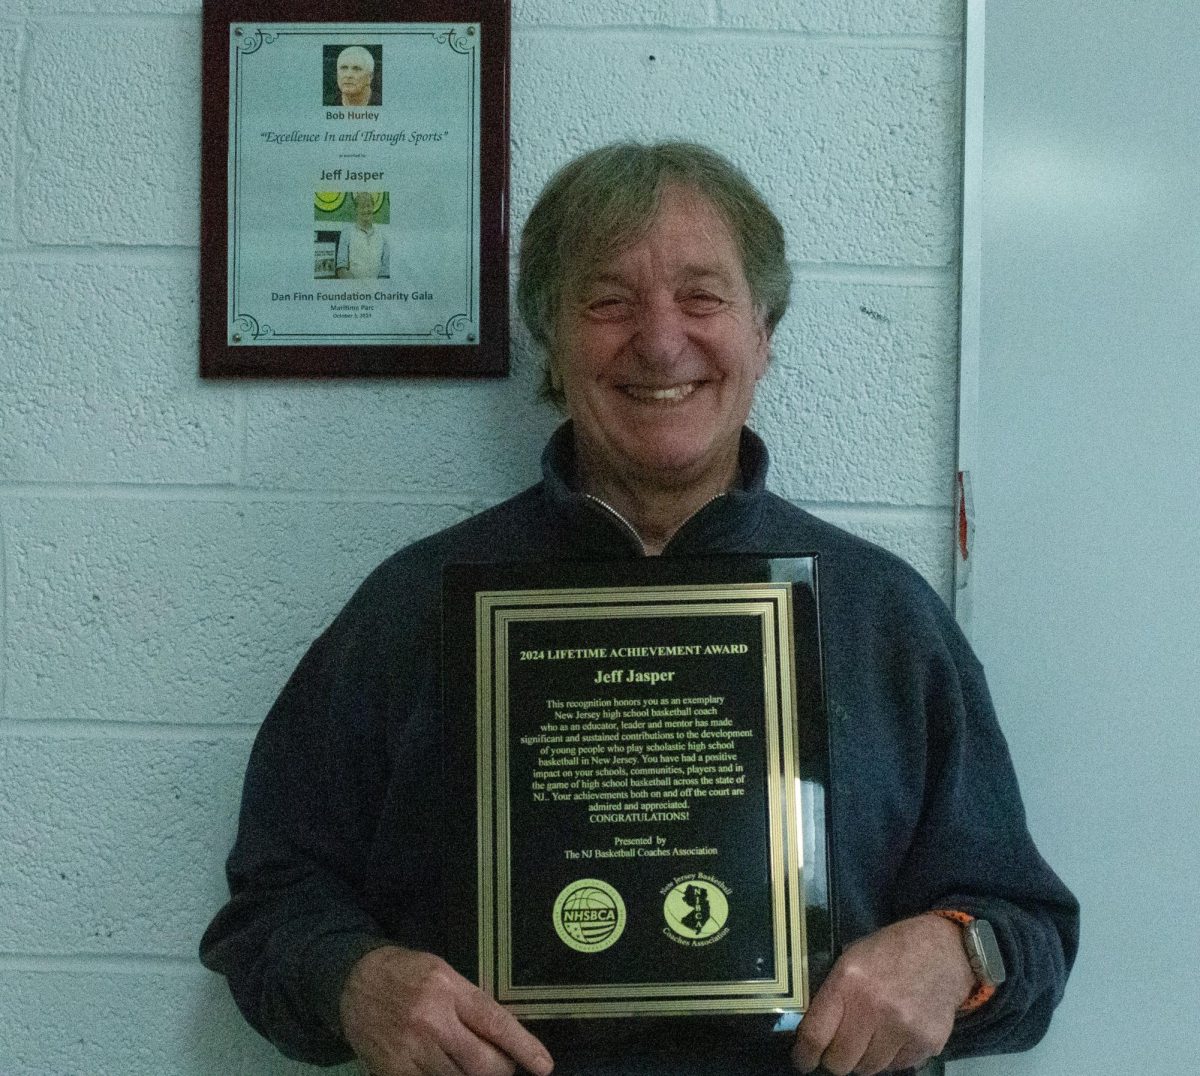 Coach Jeff Jasper poses with the Lifetime Achievement plaque.